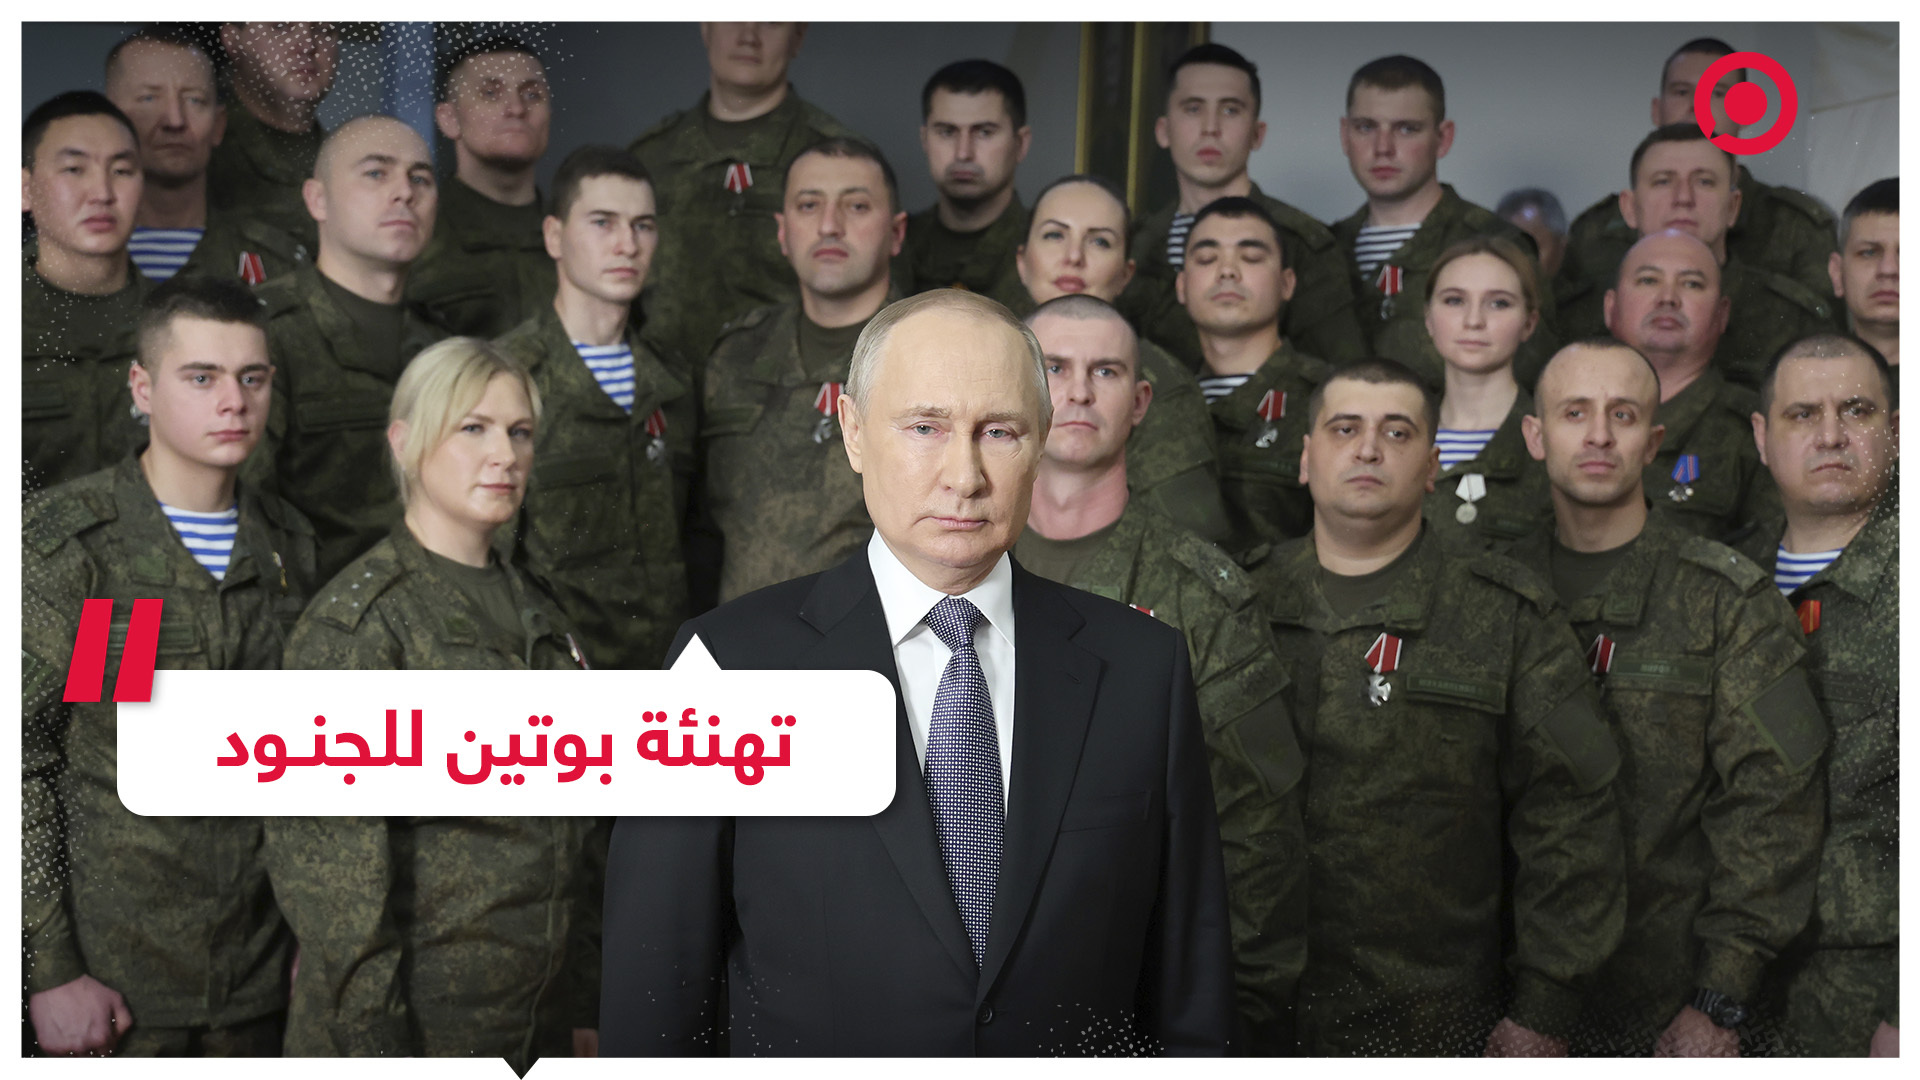 الرئيس الروسي يهنئ المشاركين في العملية العسكرية بقدوم العام الجديد